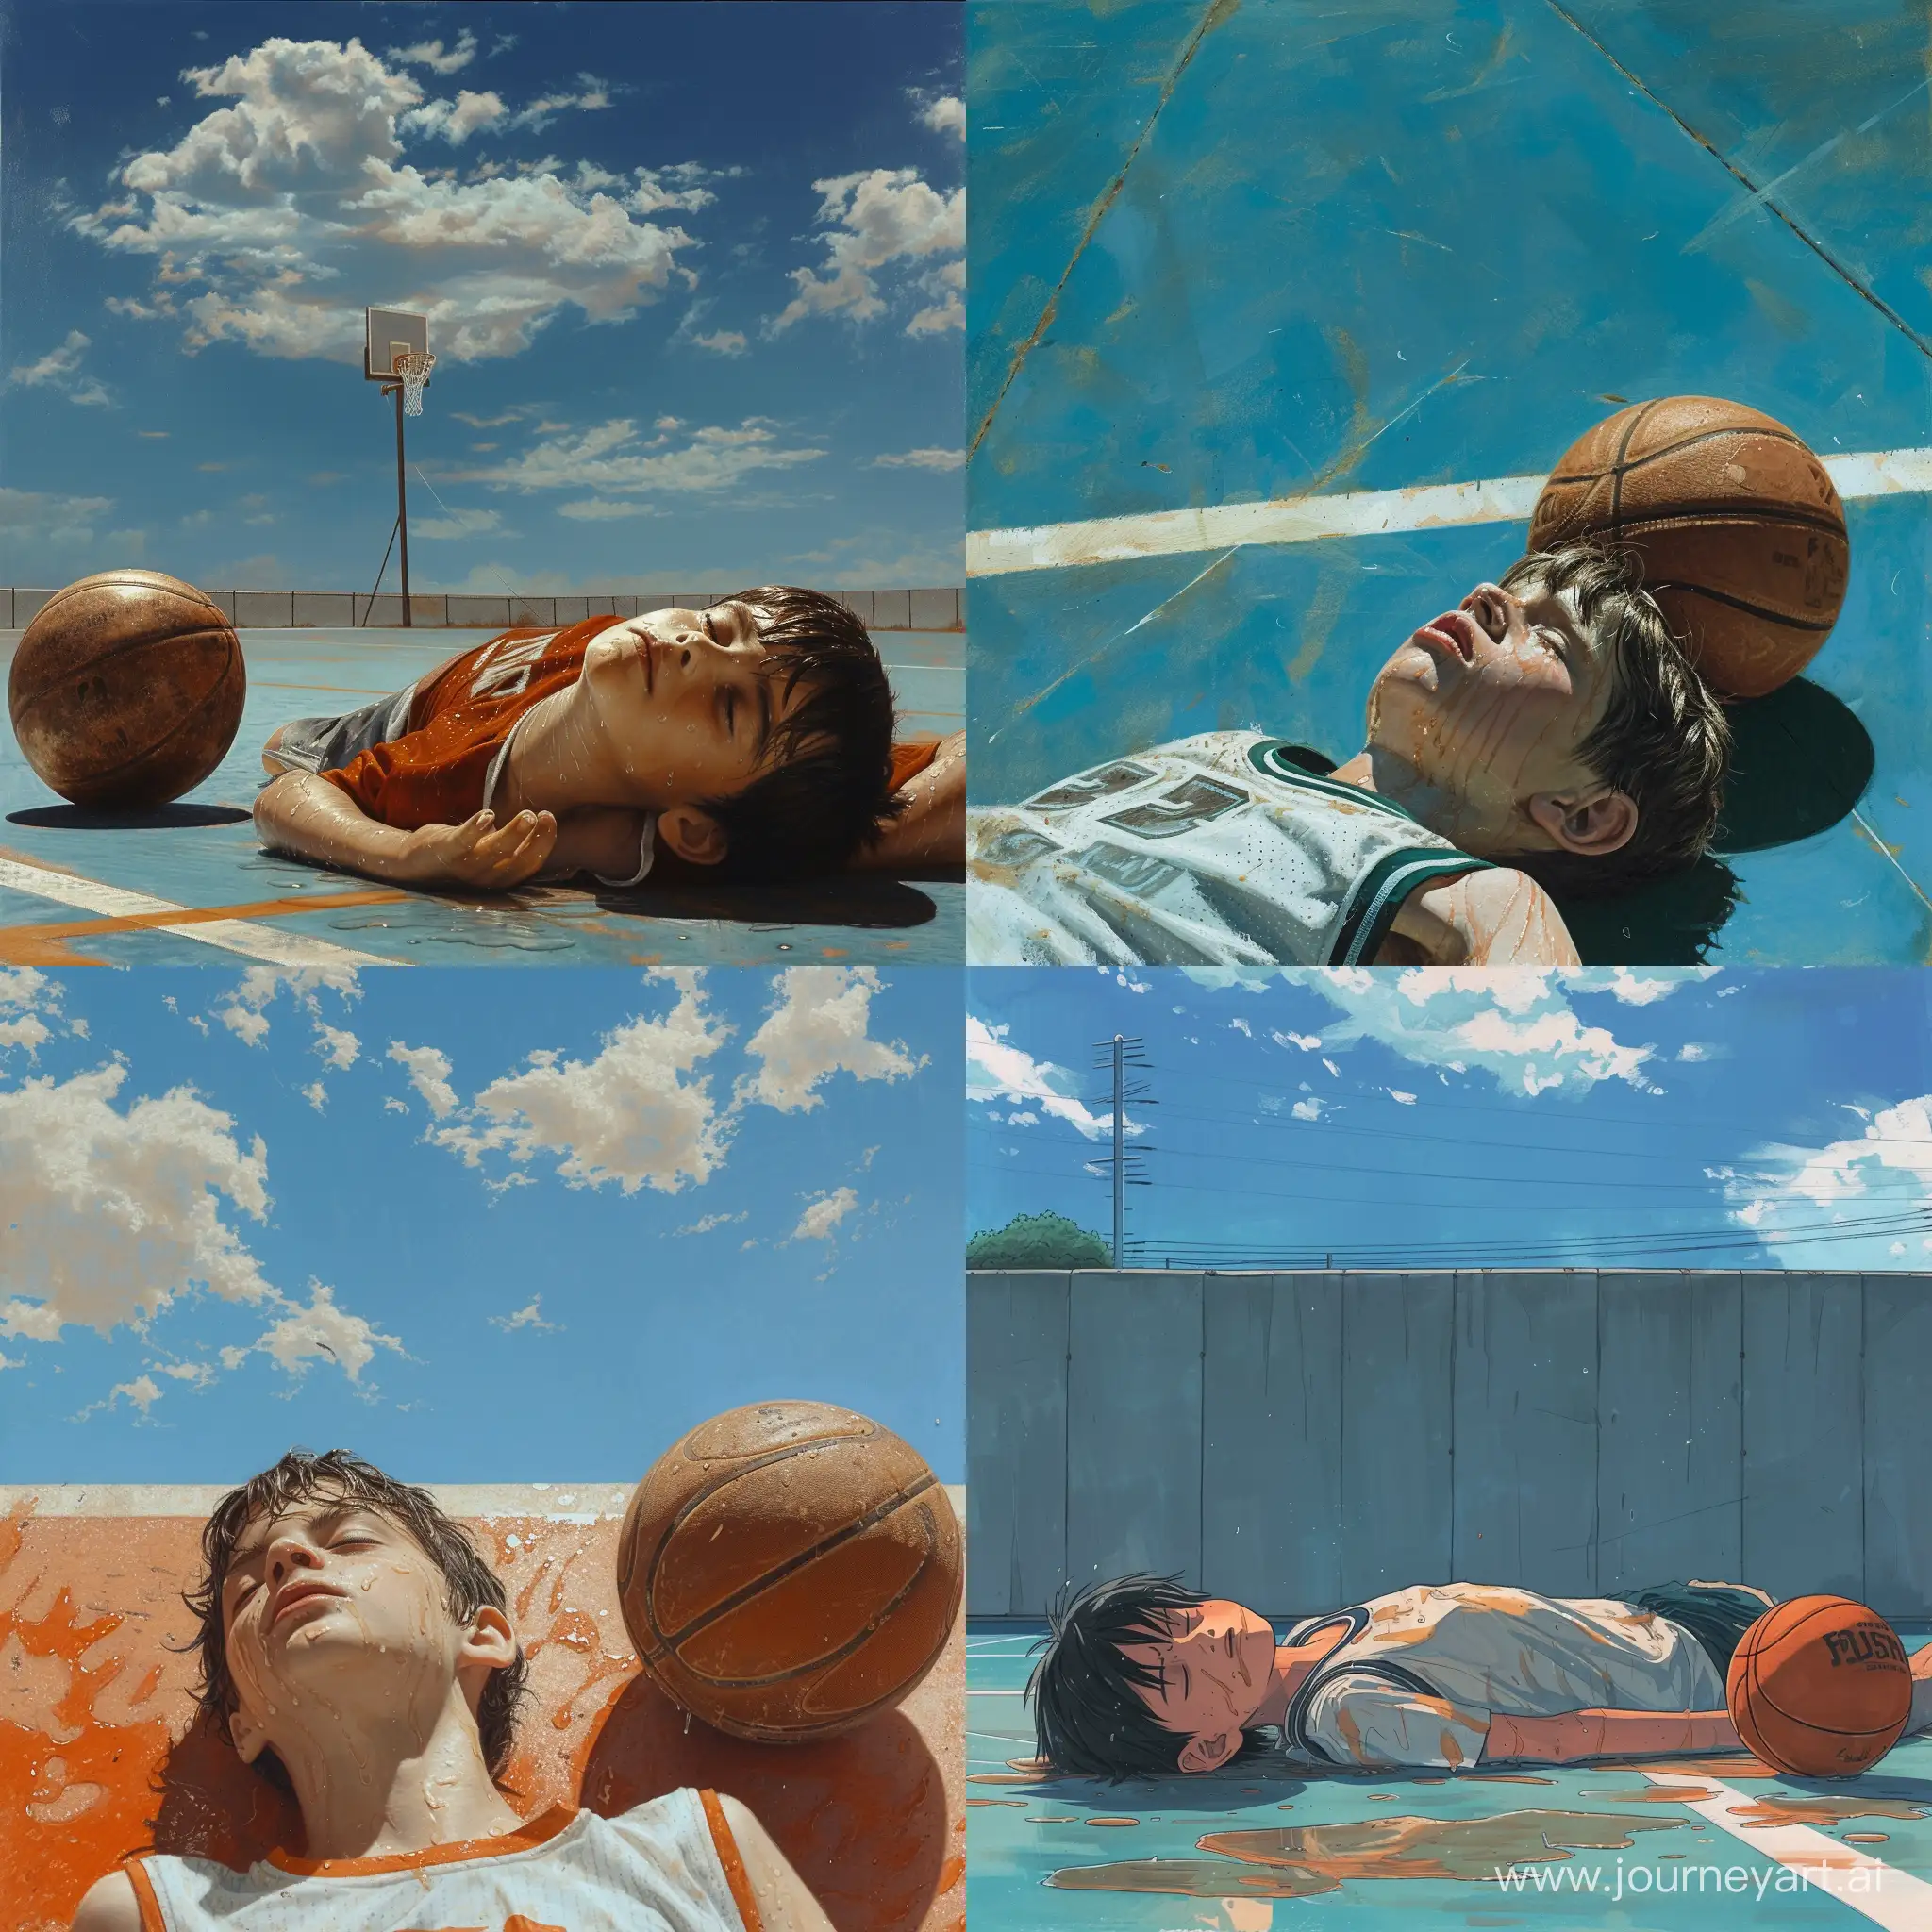 蔚蓝天空下，一个小男孩躺在篮球场上，俯视视角，满头大汗，旁边放着一个破旧的篮球